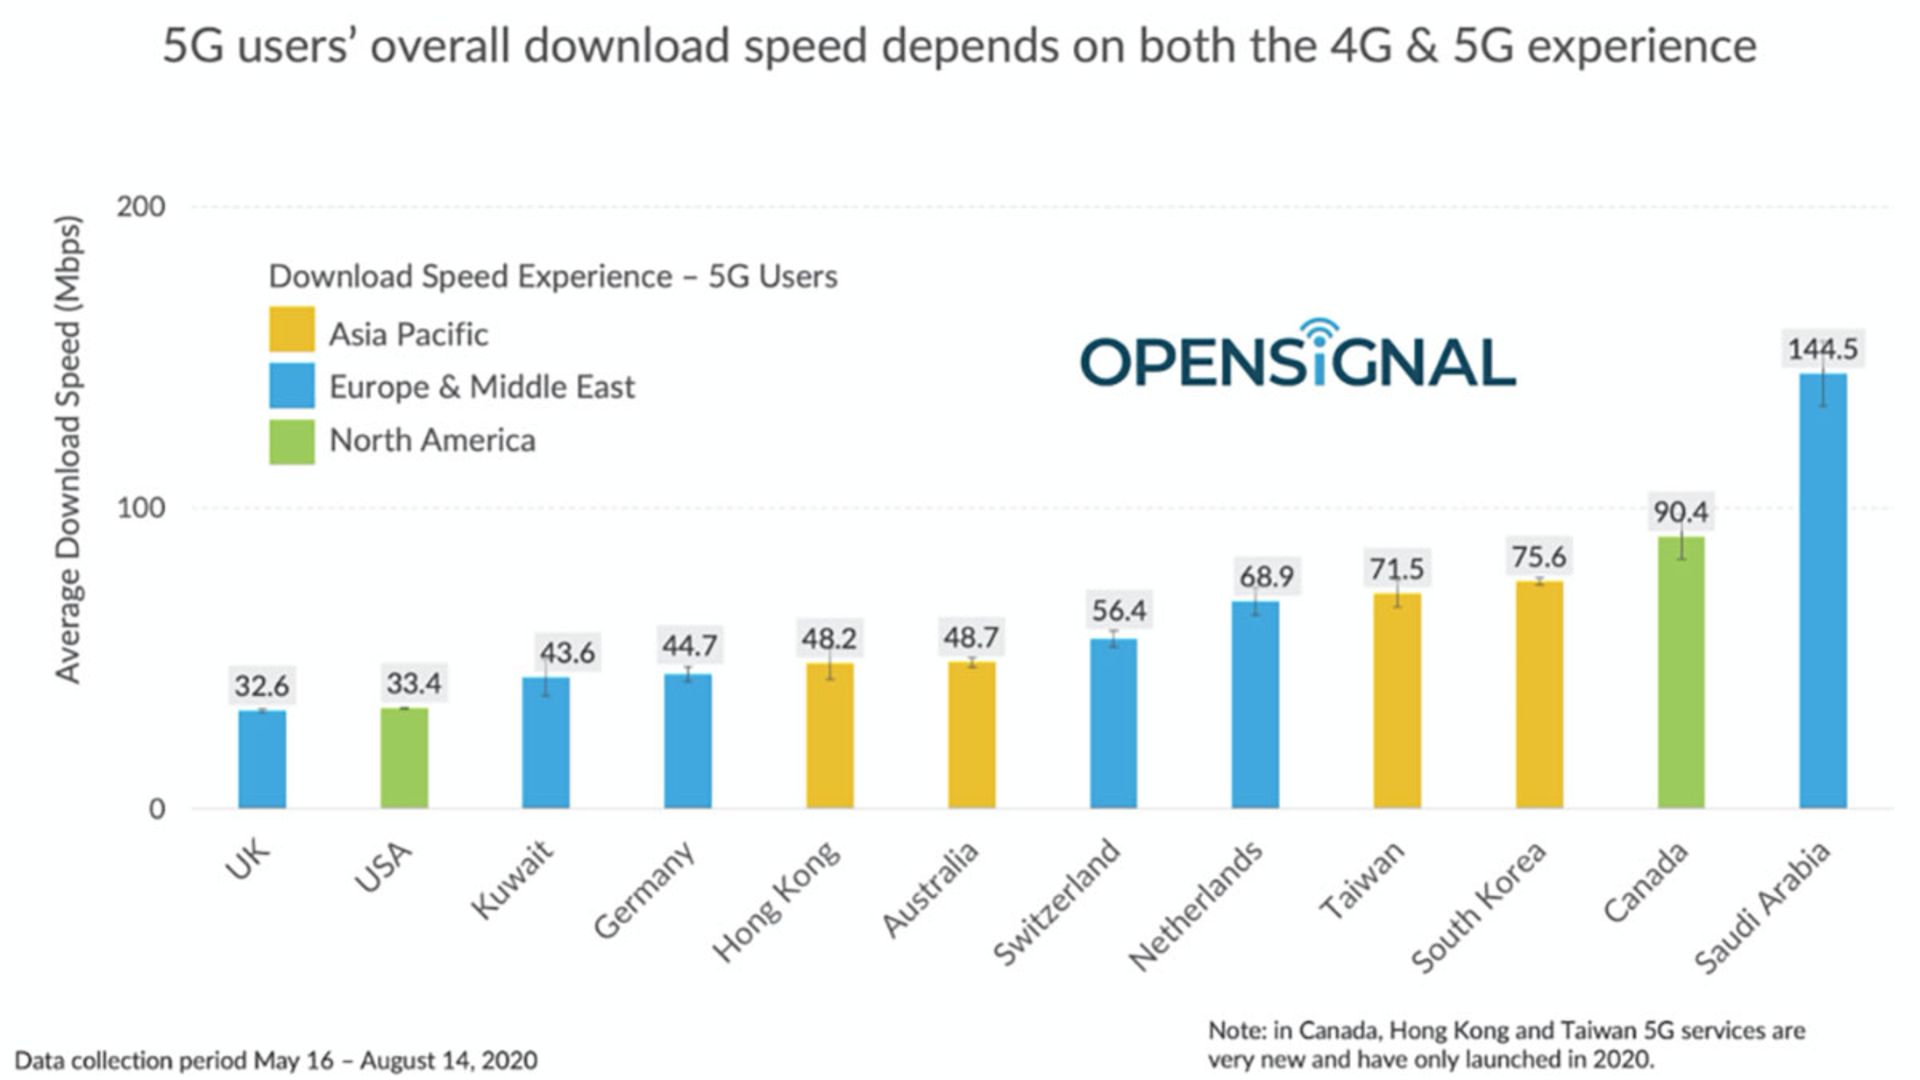 میانگین سرعت دانلود کاربران در شبکه 5G در ۱۲ کشور